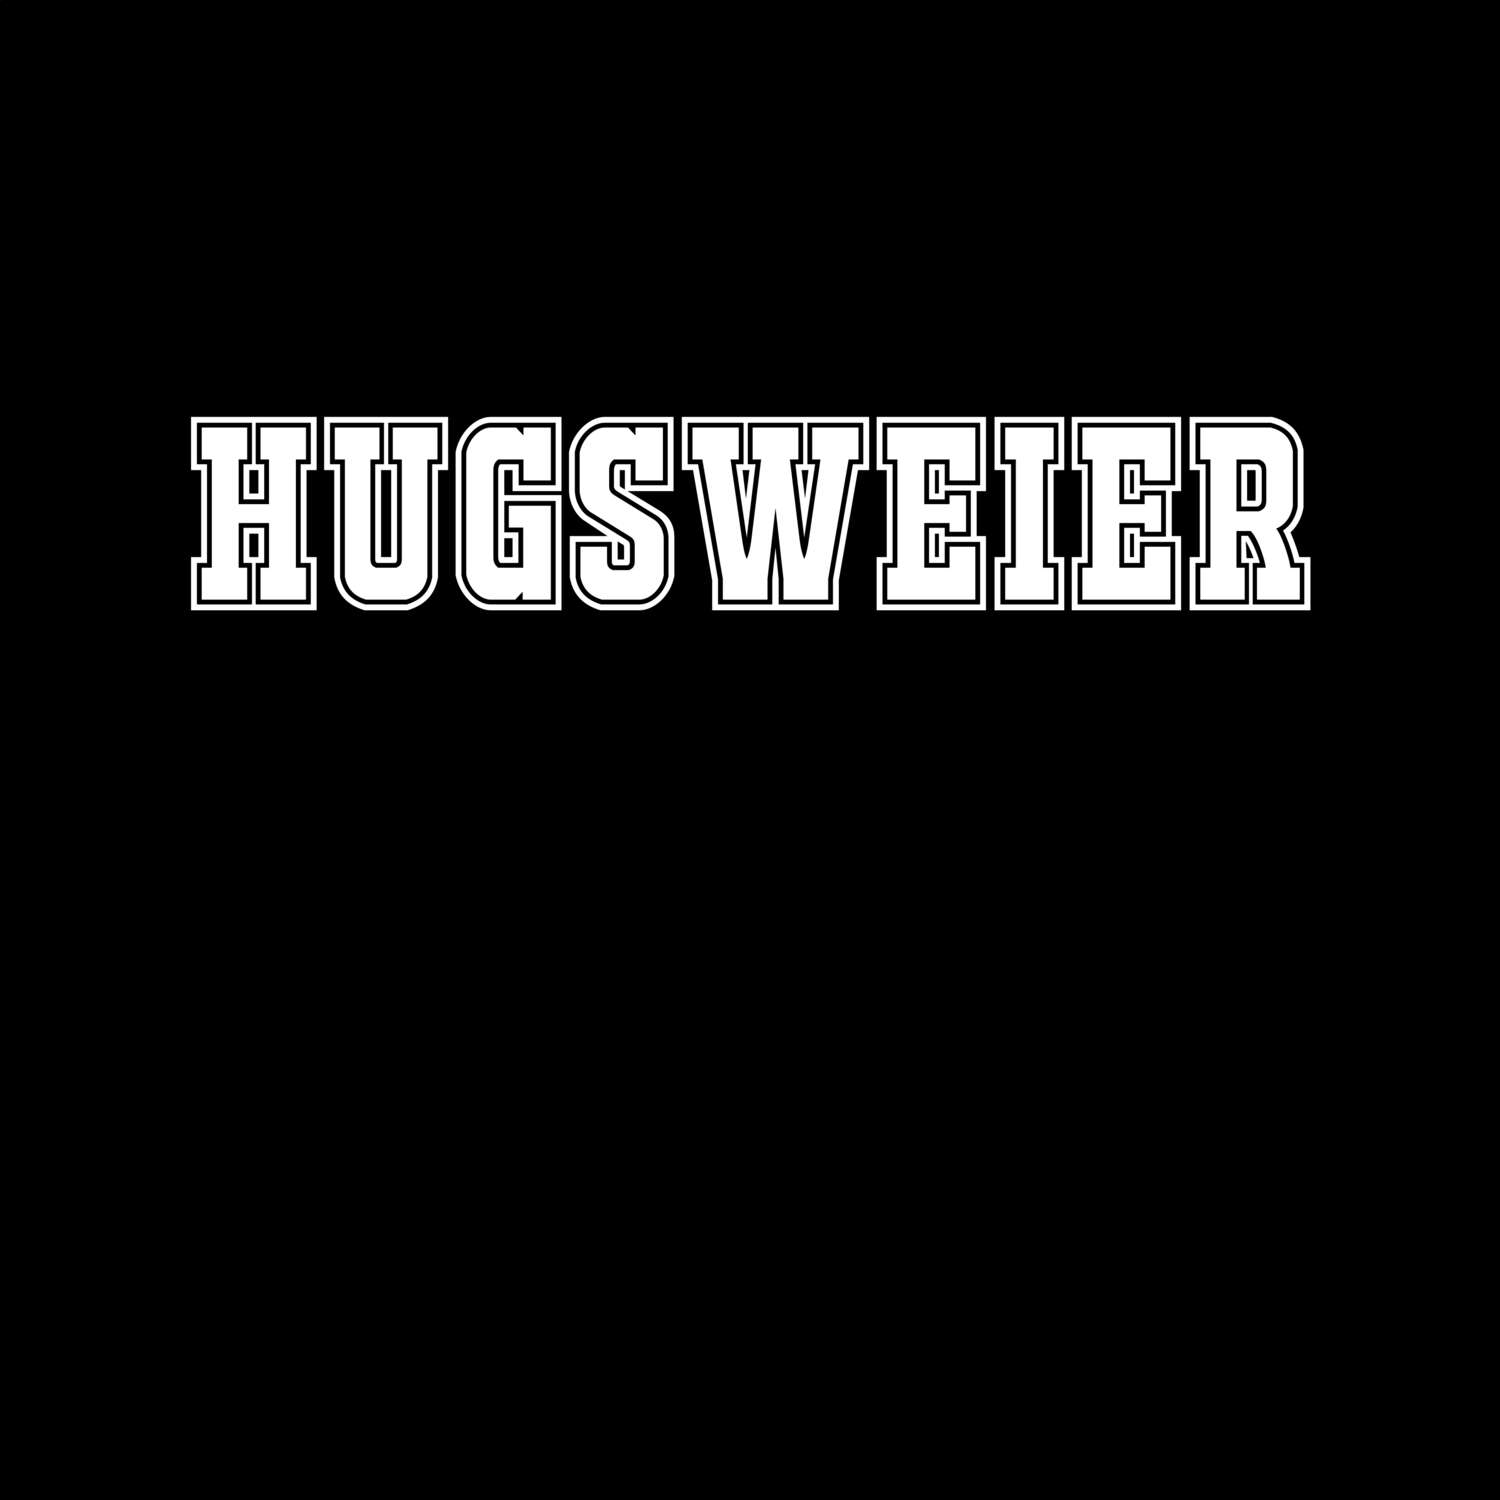 Hugsweier T-Shirt »Classic«